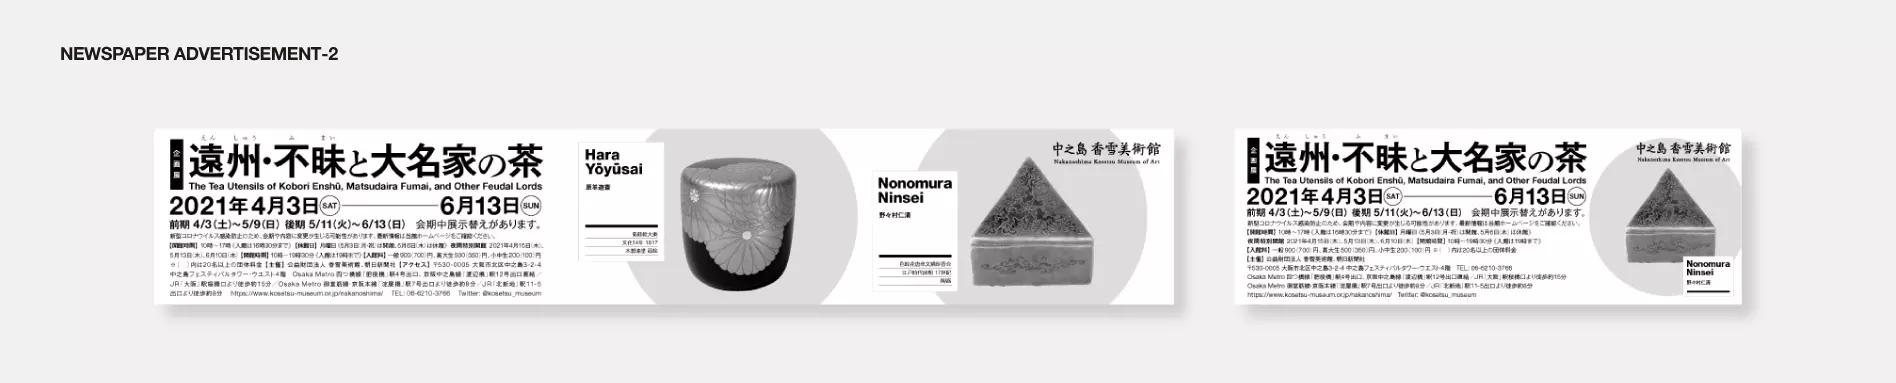 中之島香雪美術館_遠州・不昧展覧会新聞広告デザイン